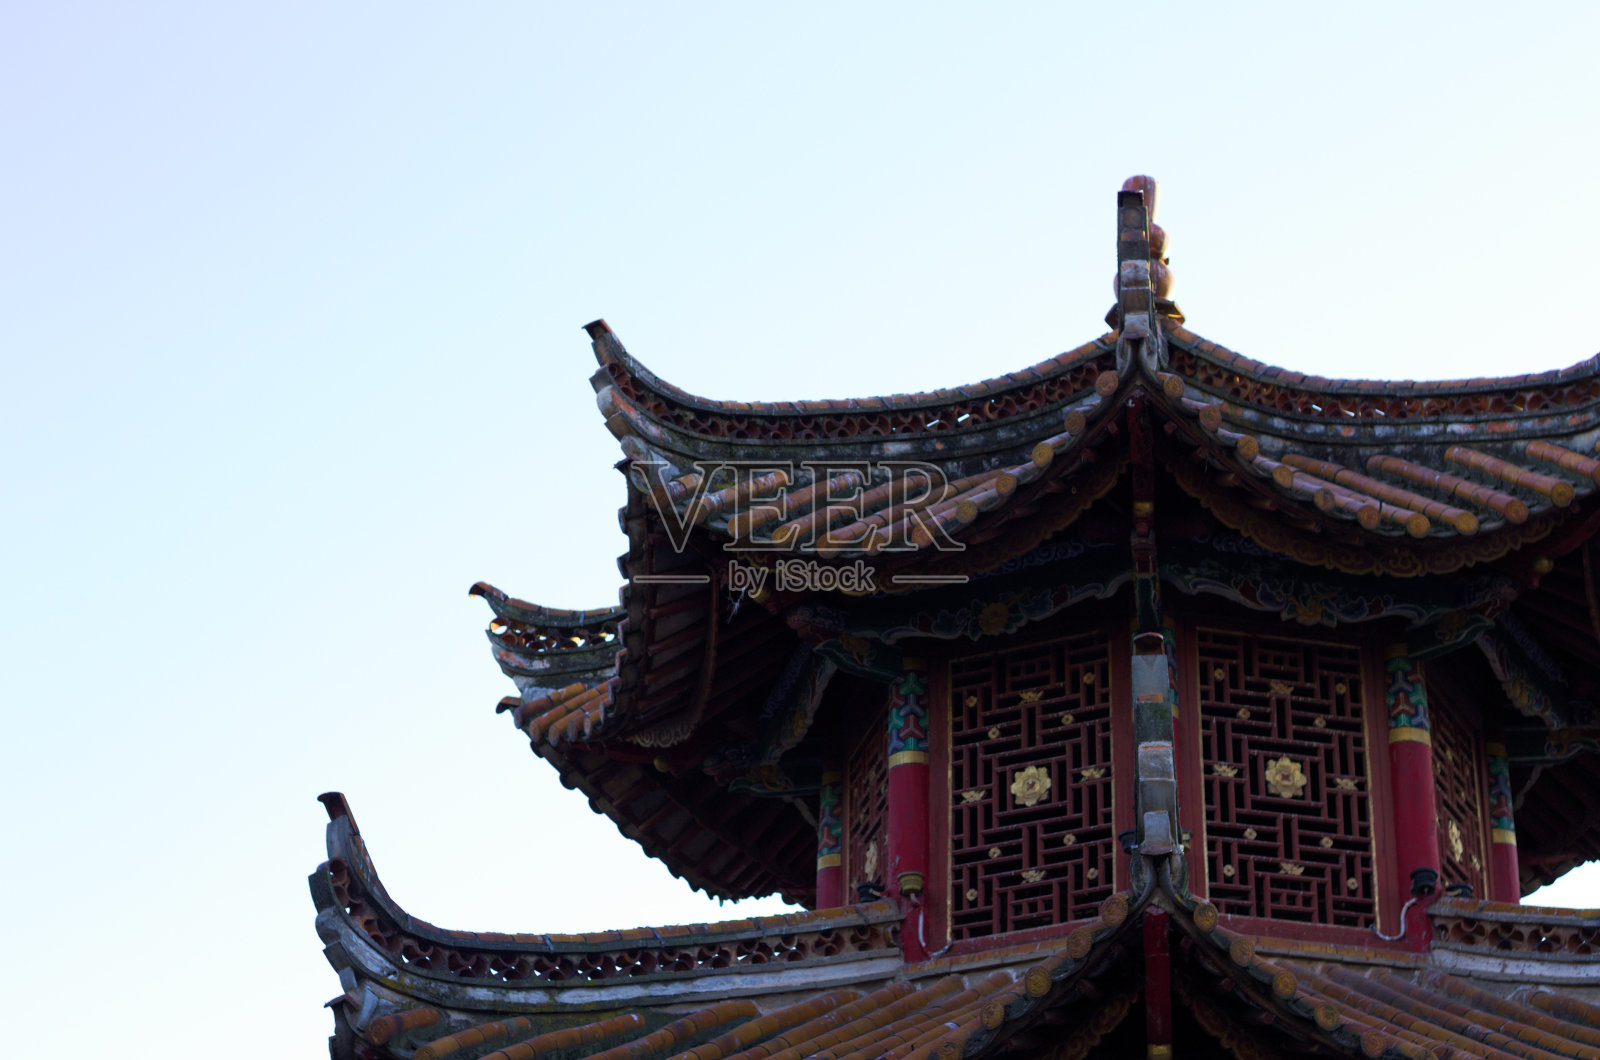 Chuiu公园的寺庙细节(中国云南昆明)照片摄影图片